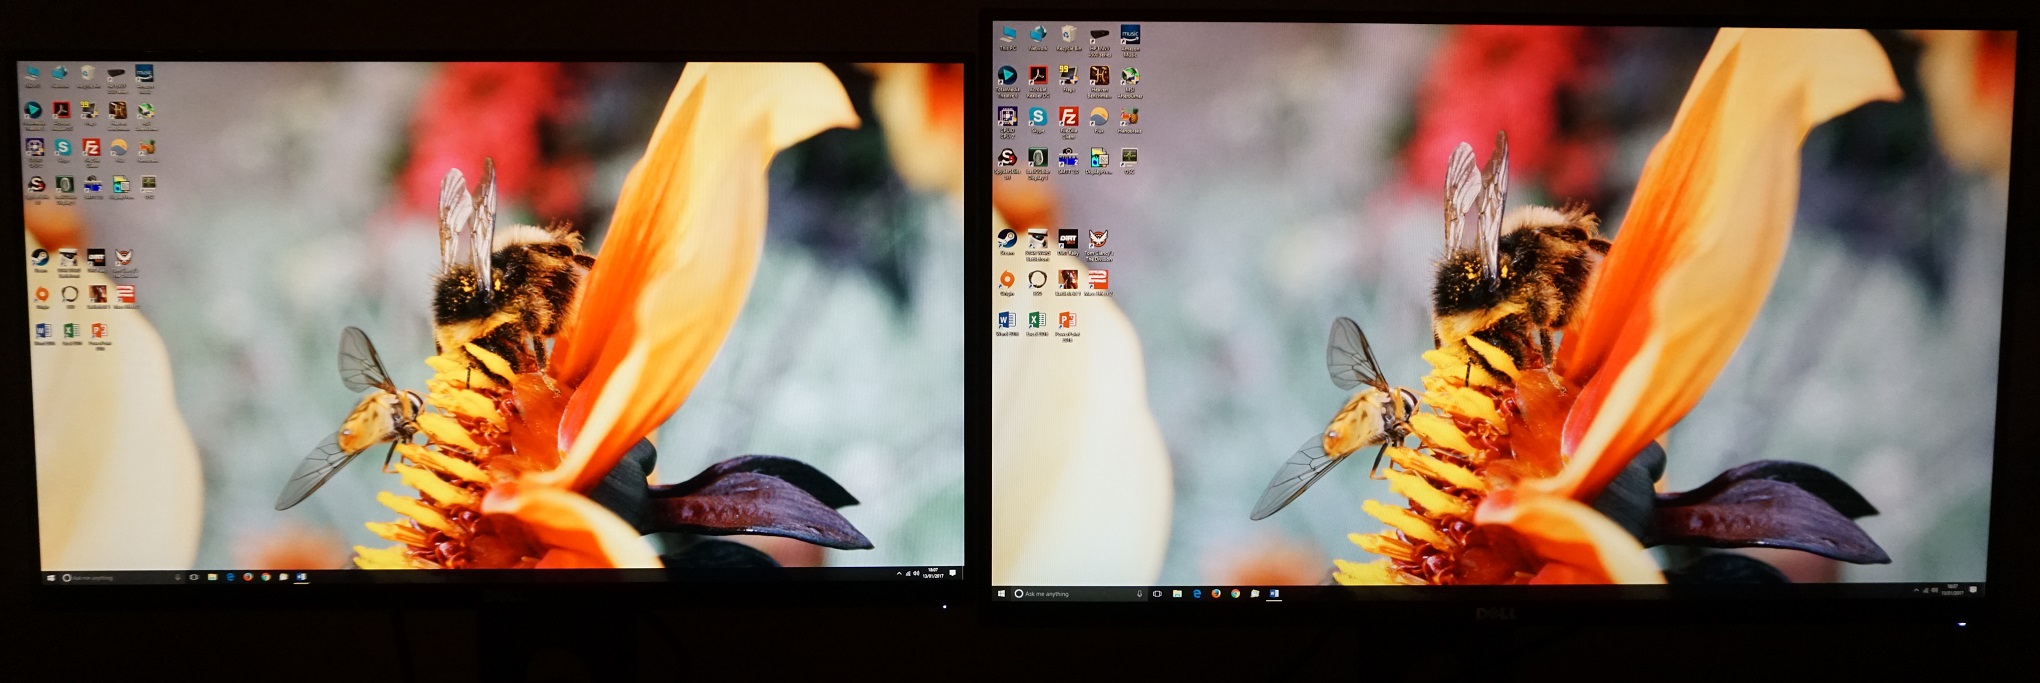 Desktop comparison, S24 on left